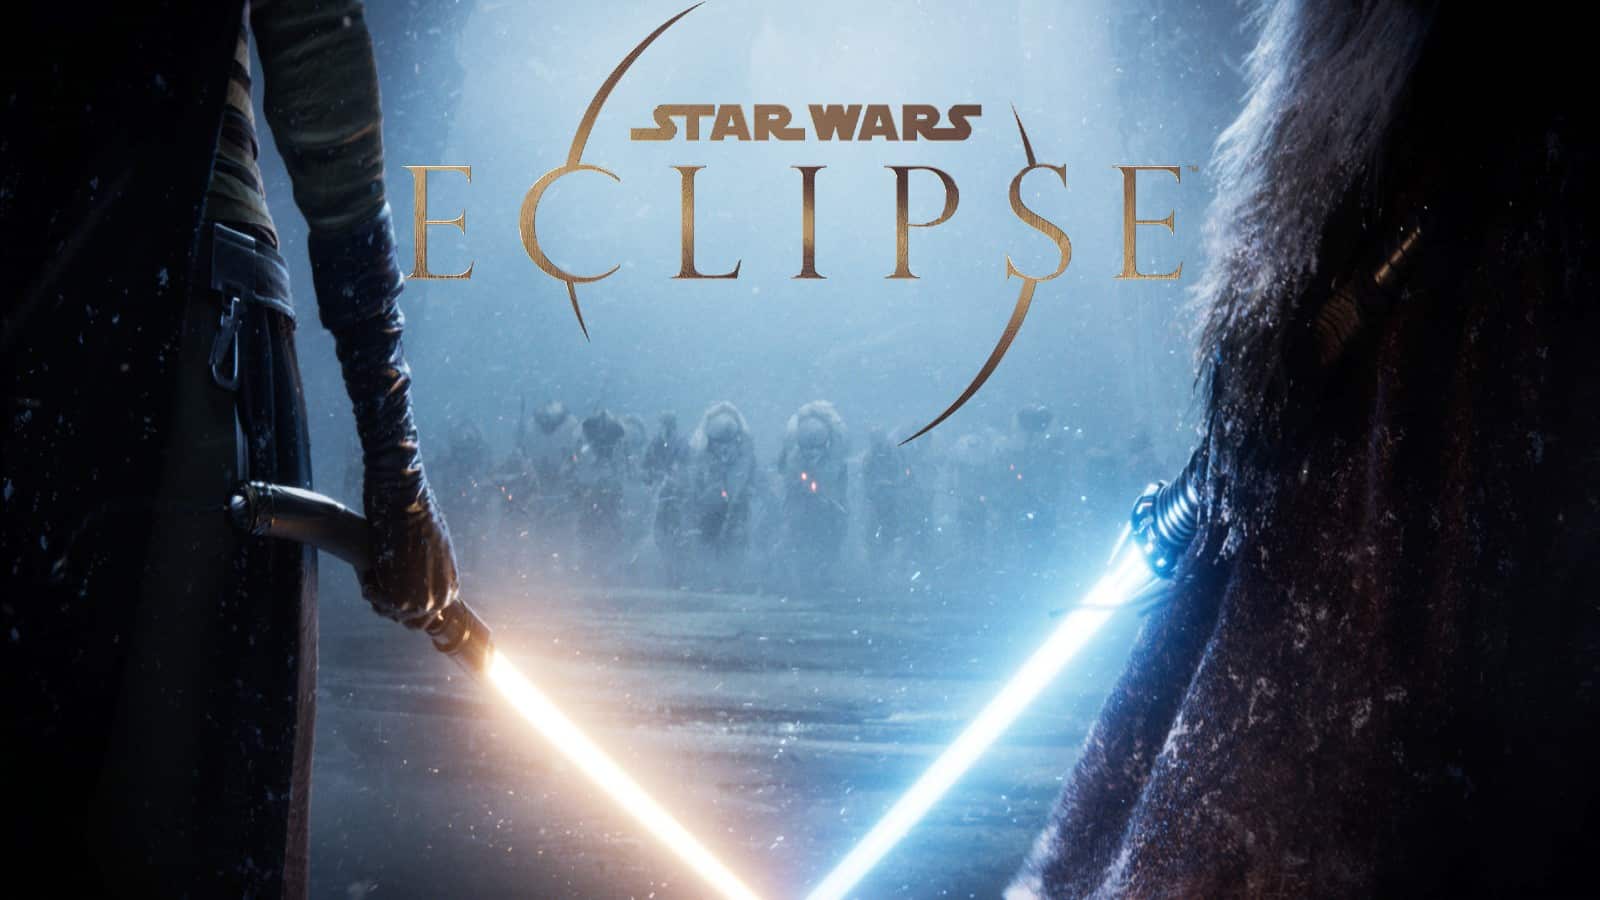 Two lightsaber wielders in Star Wars Eclipse